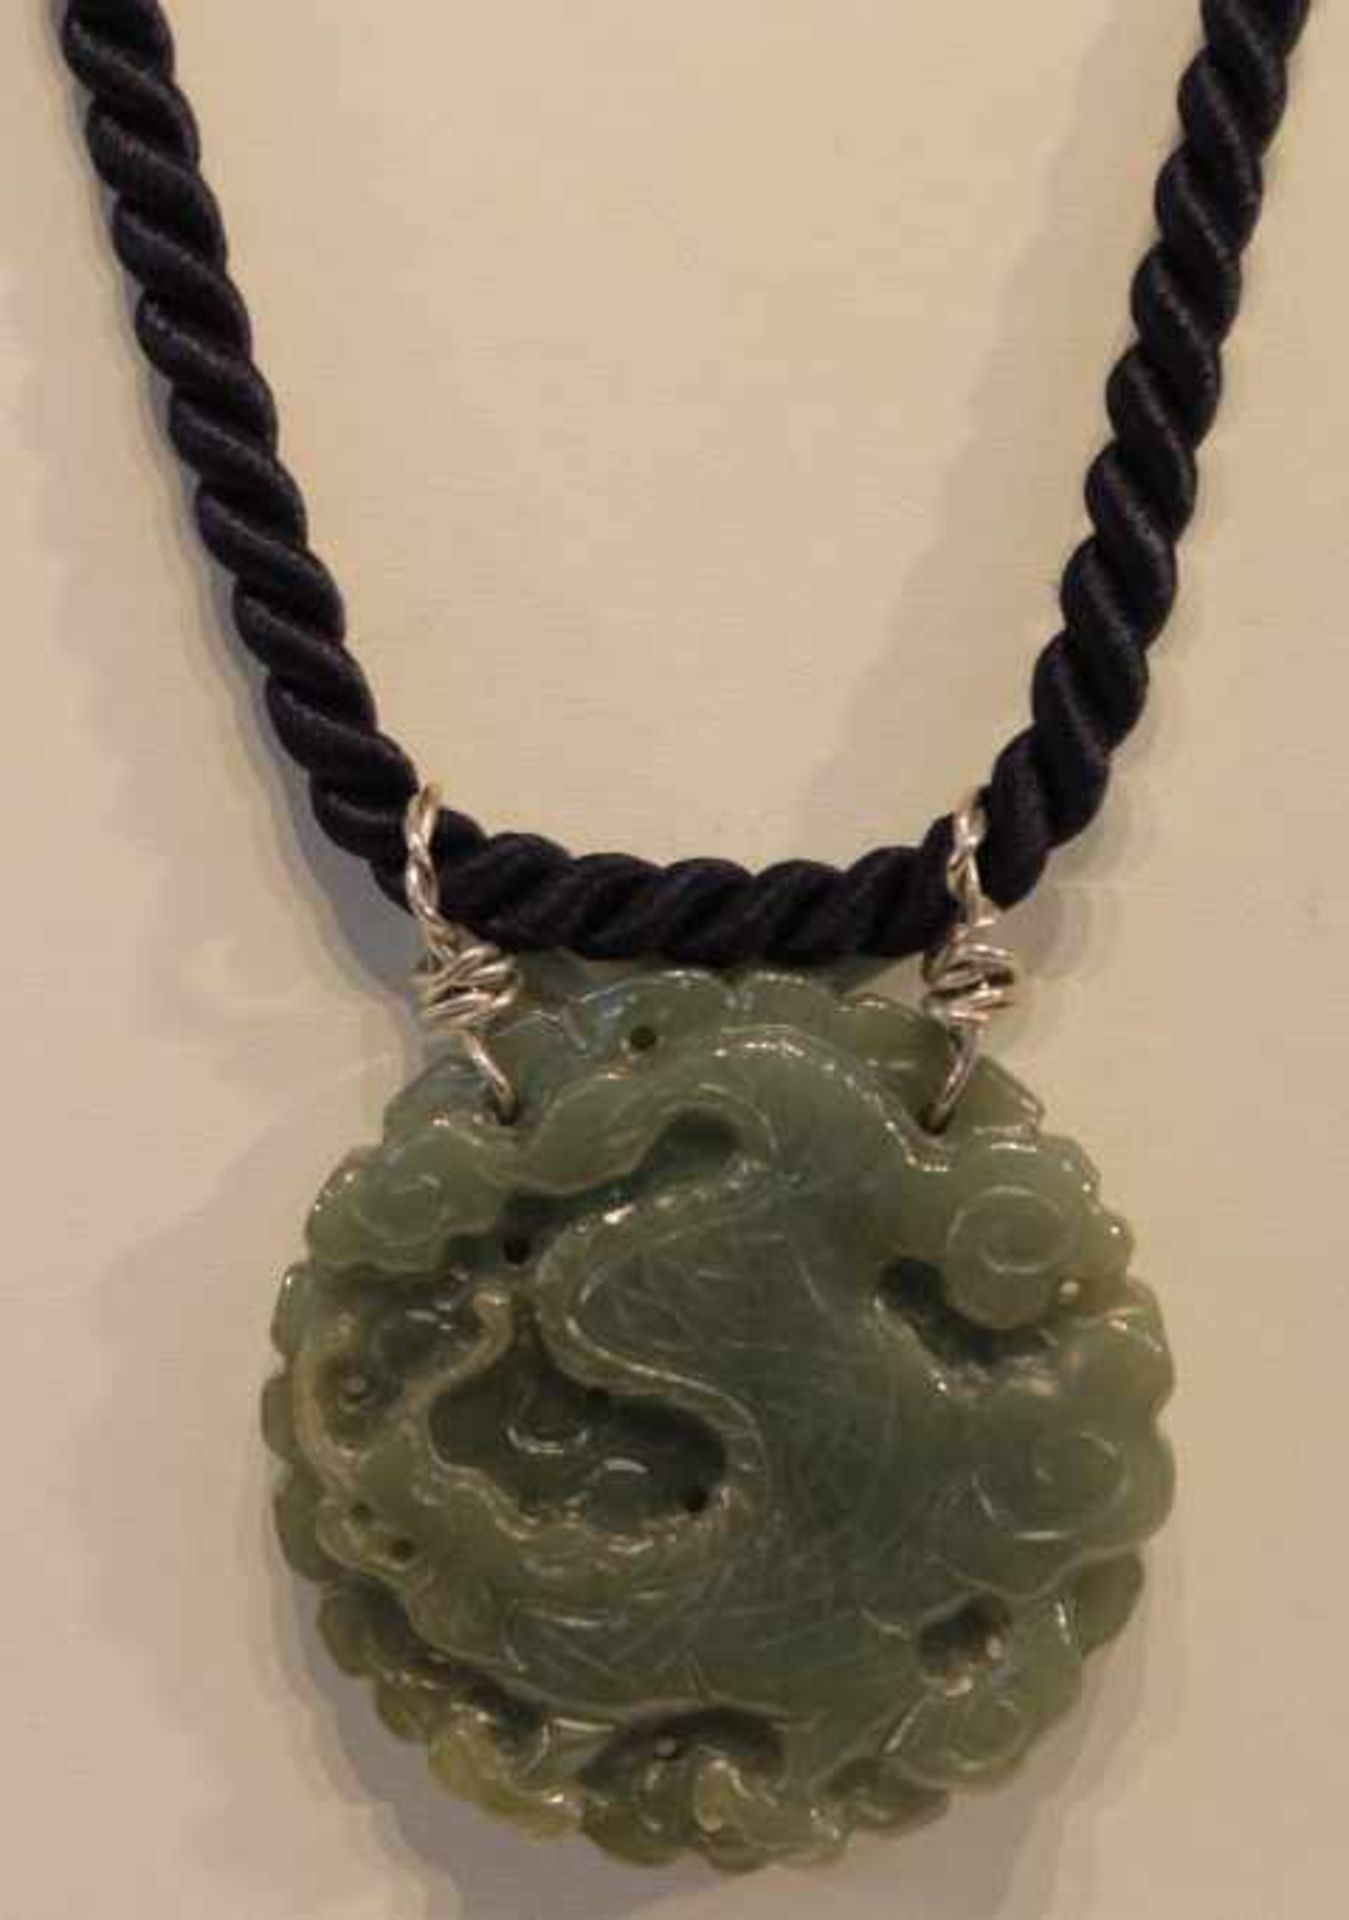 CollierBlaue Kordel Verschluß SilberAnhänger Wohl Jade?mit geprägten Drachen und ObstDm:5,5x5,5cmL: - Bild 2 aus 2